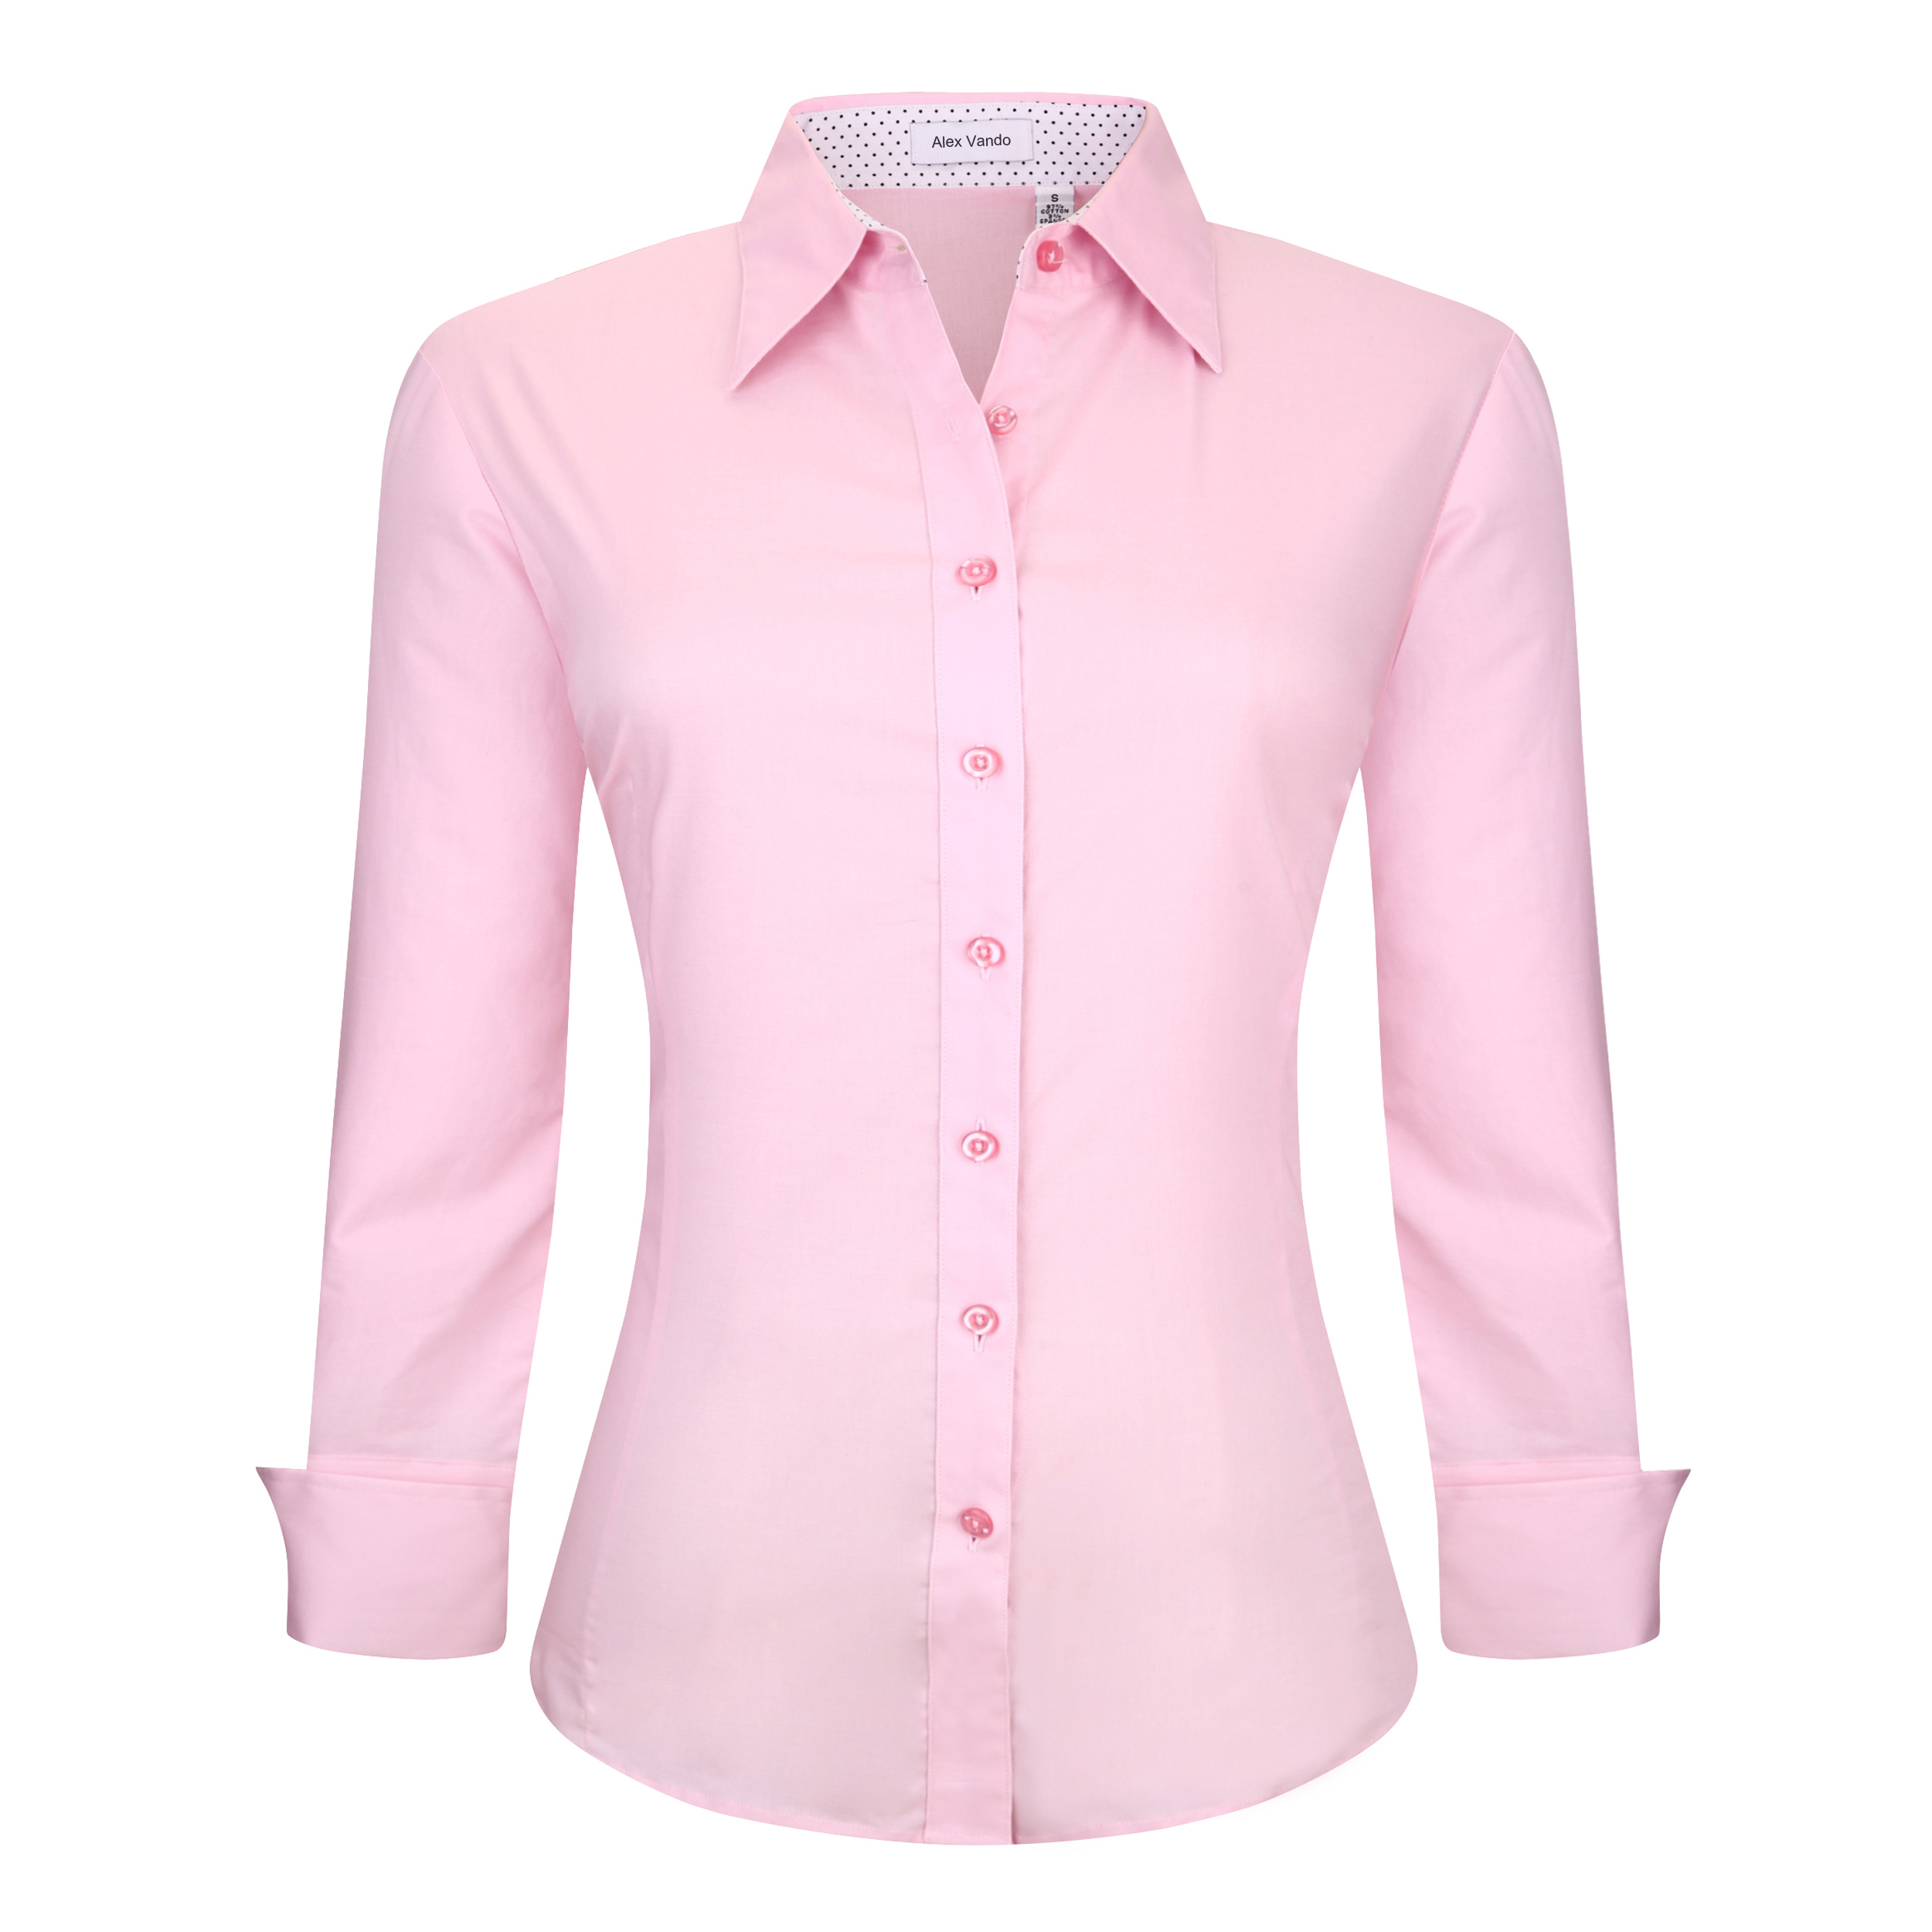 pink long sleeve shirt womens